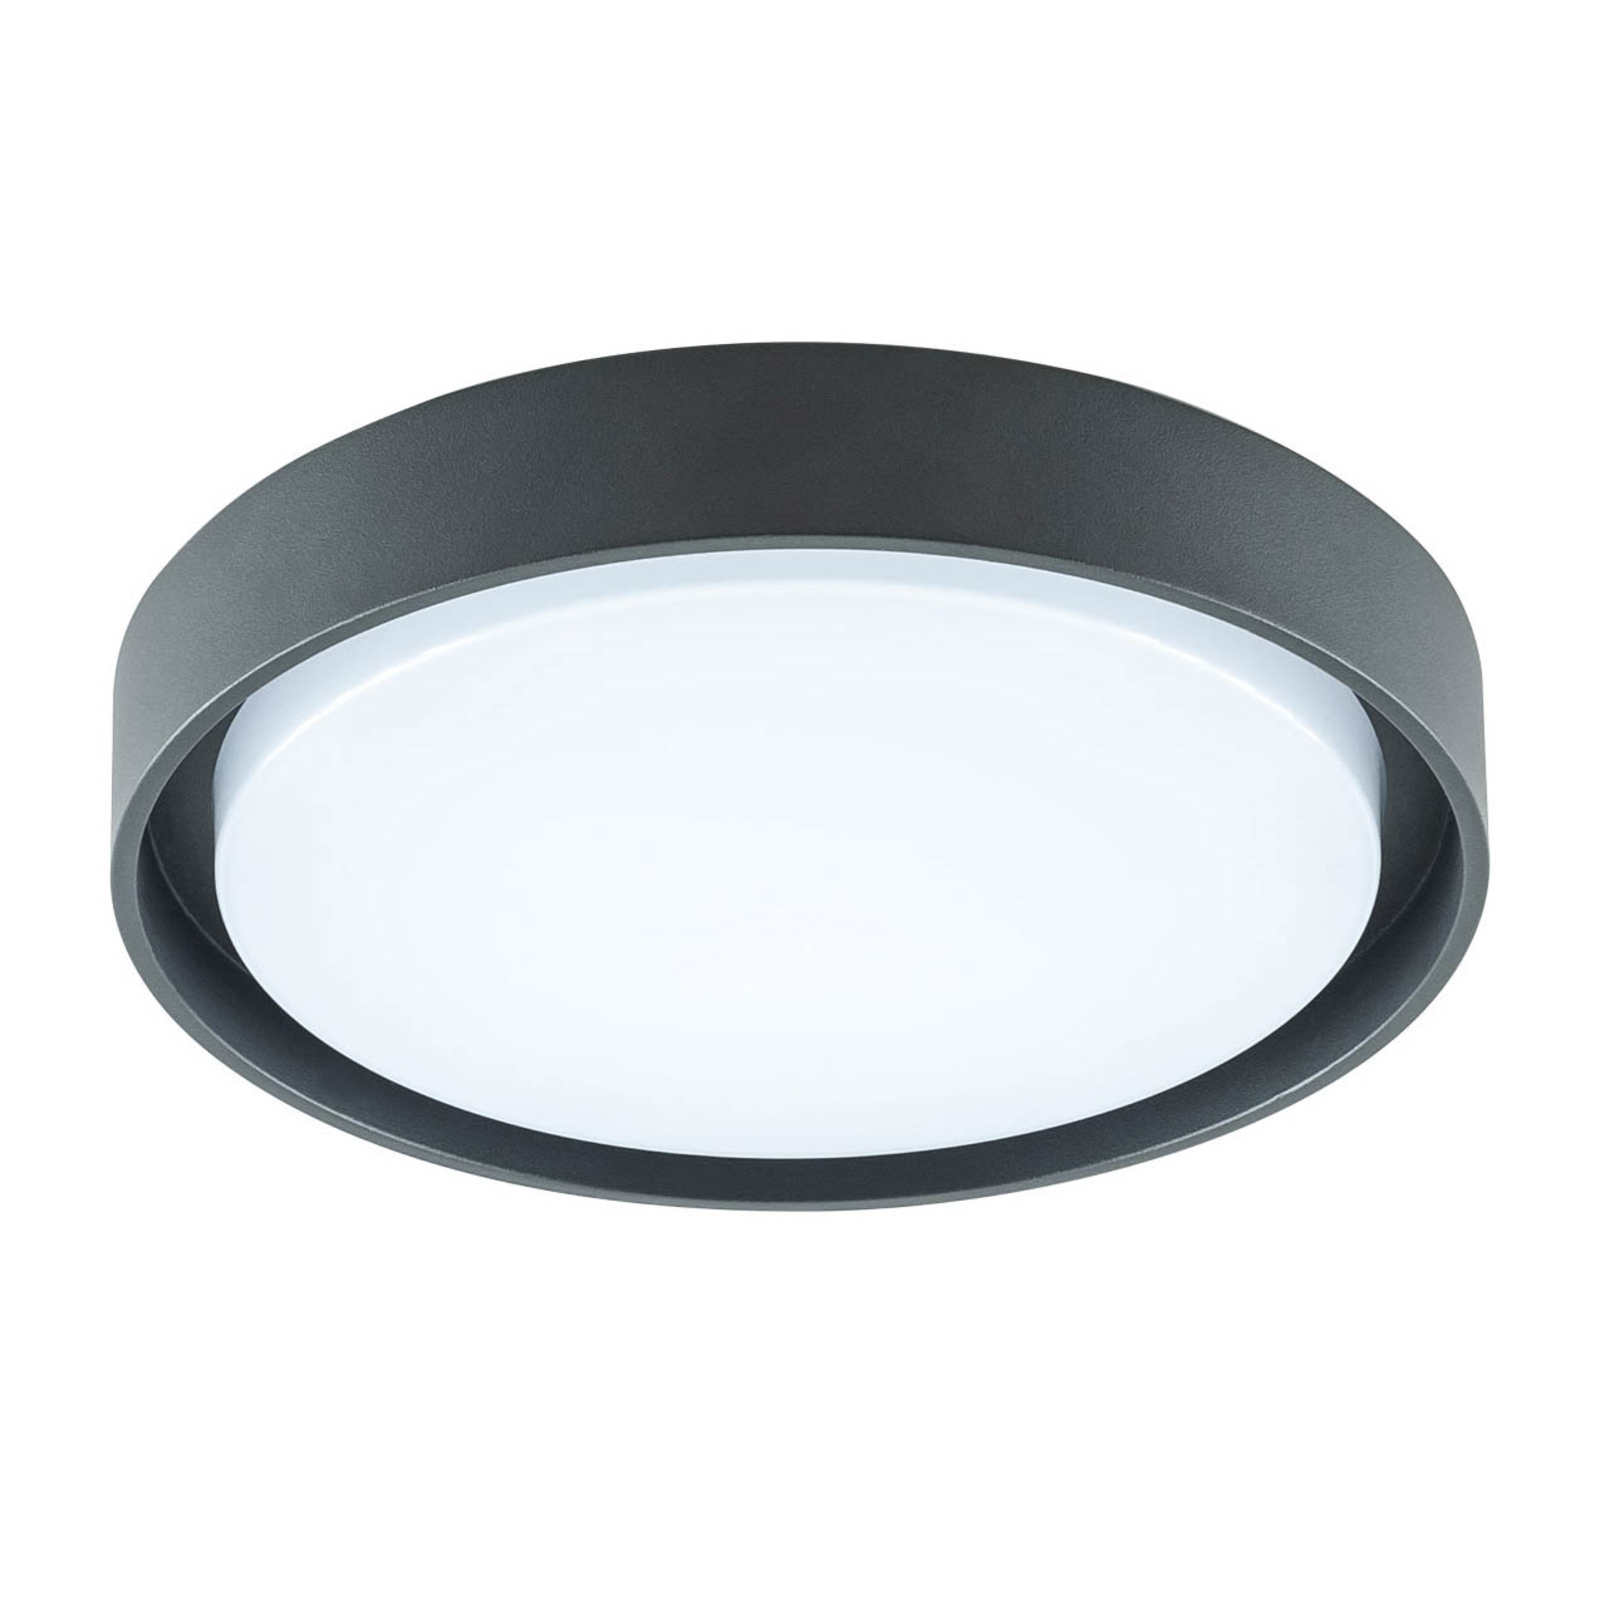 EVN Tectum LED outdoor ceiling light round 25 cm